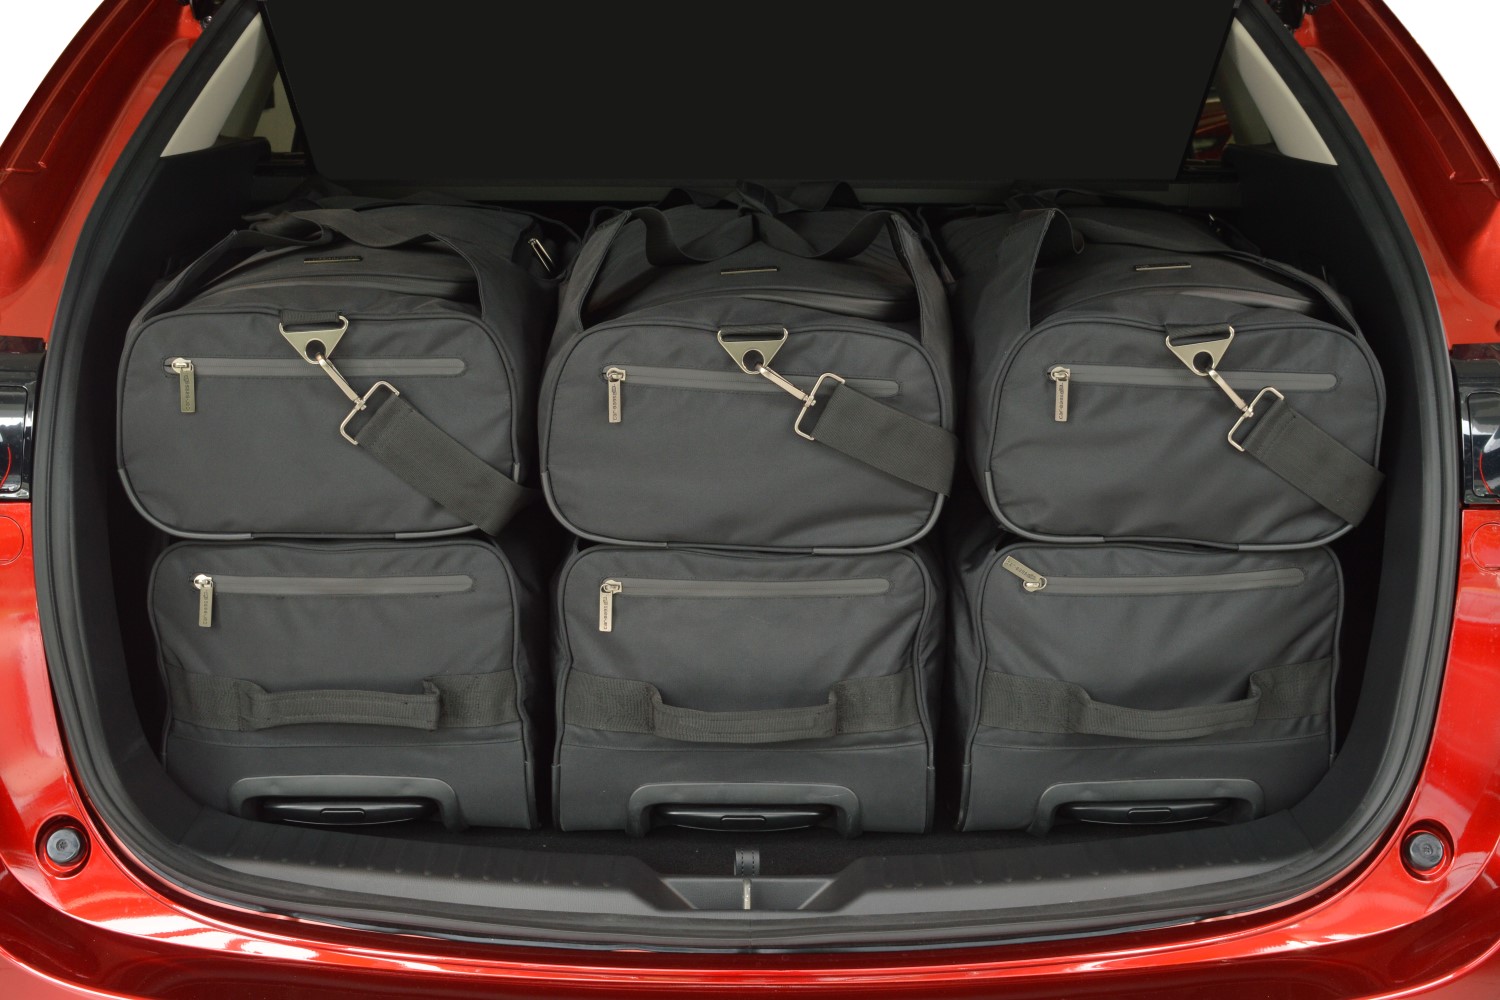 Carbags Reisetaschenset passend für Skoda Enyaq iV 2020-heute #S52301S